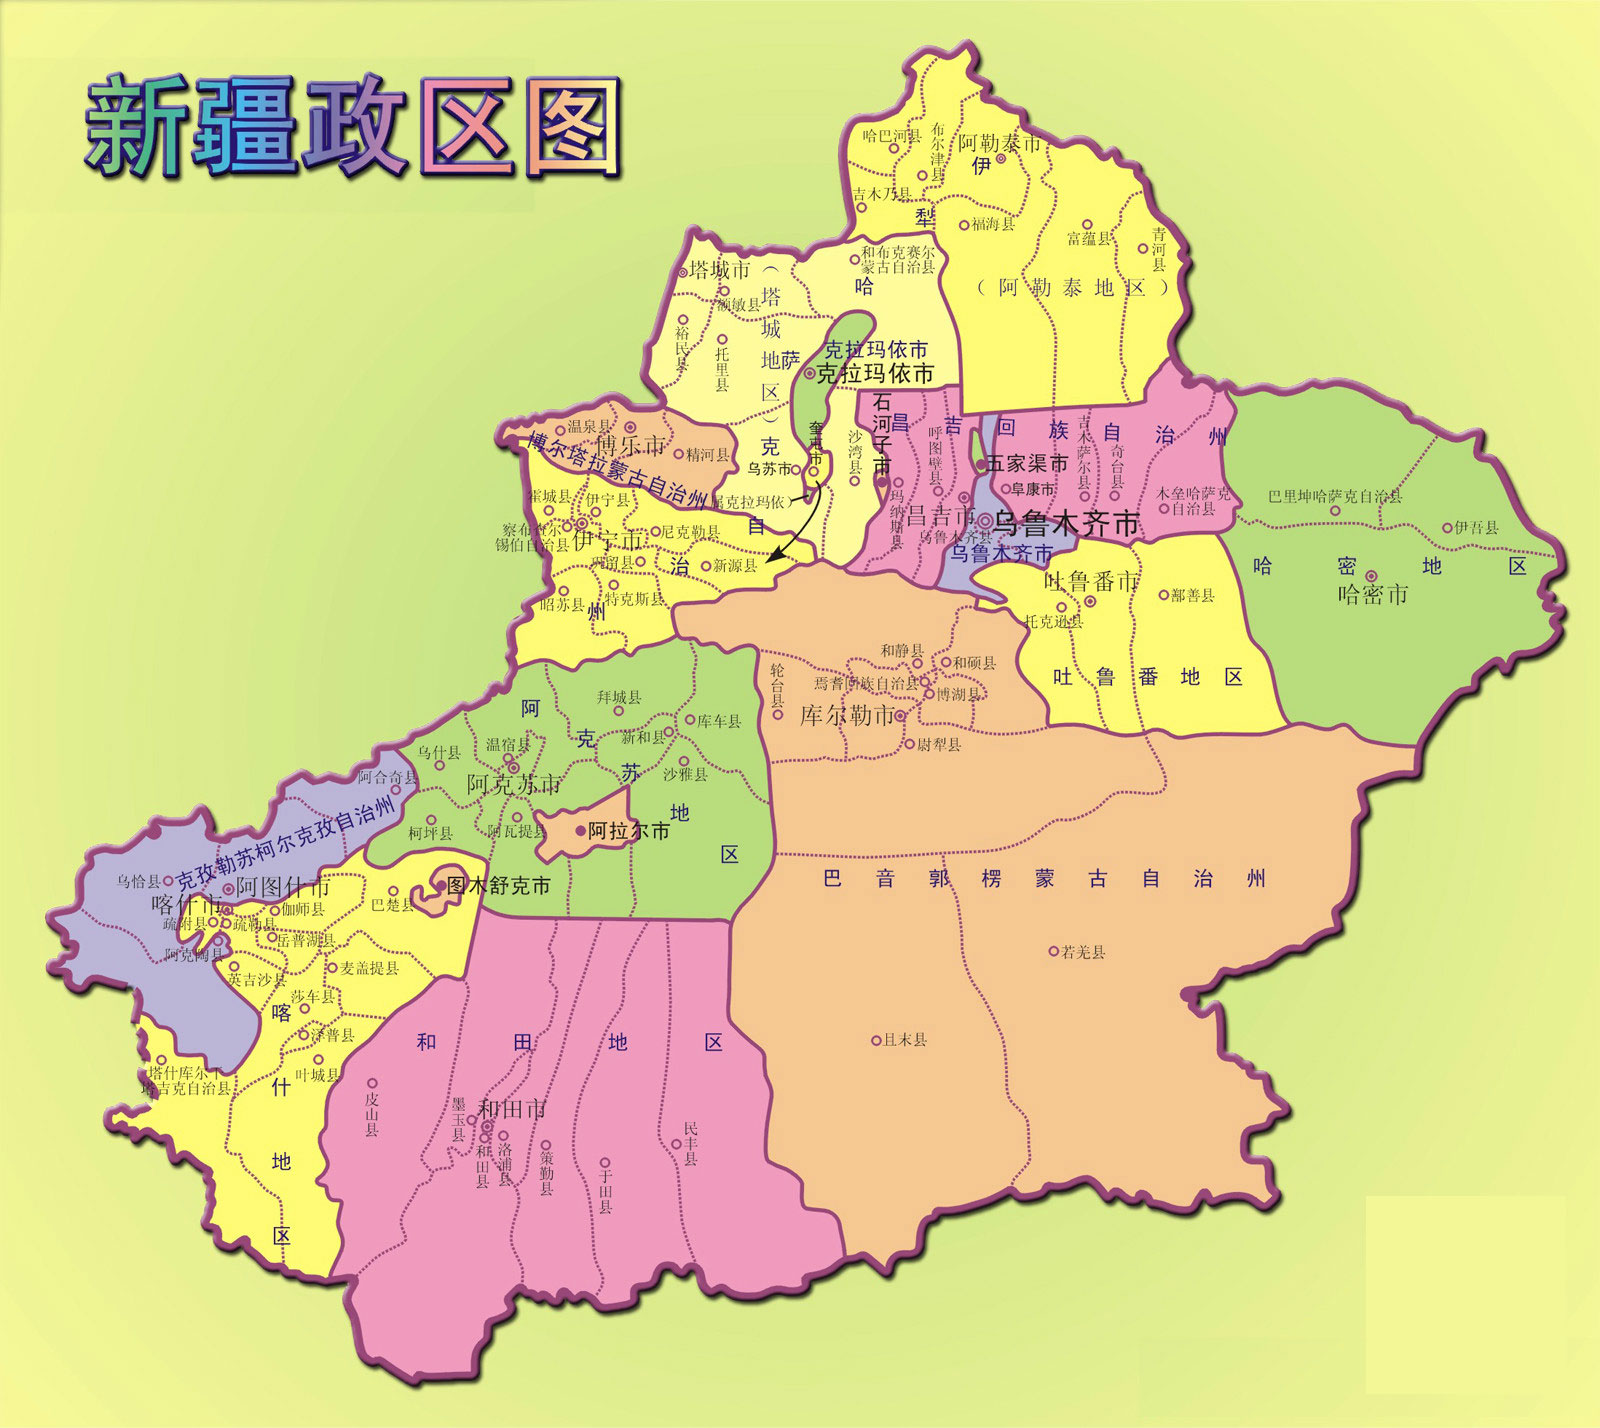 新疆地形图|新疆地形图全图高清版大图片|旅途风景图片网|www.visacits.com